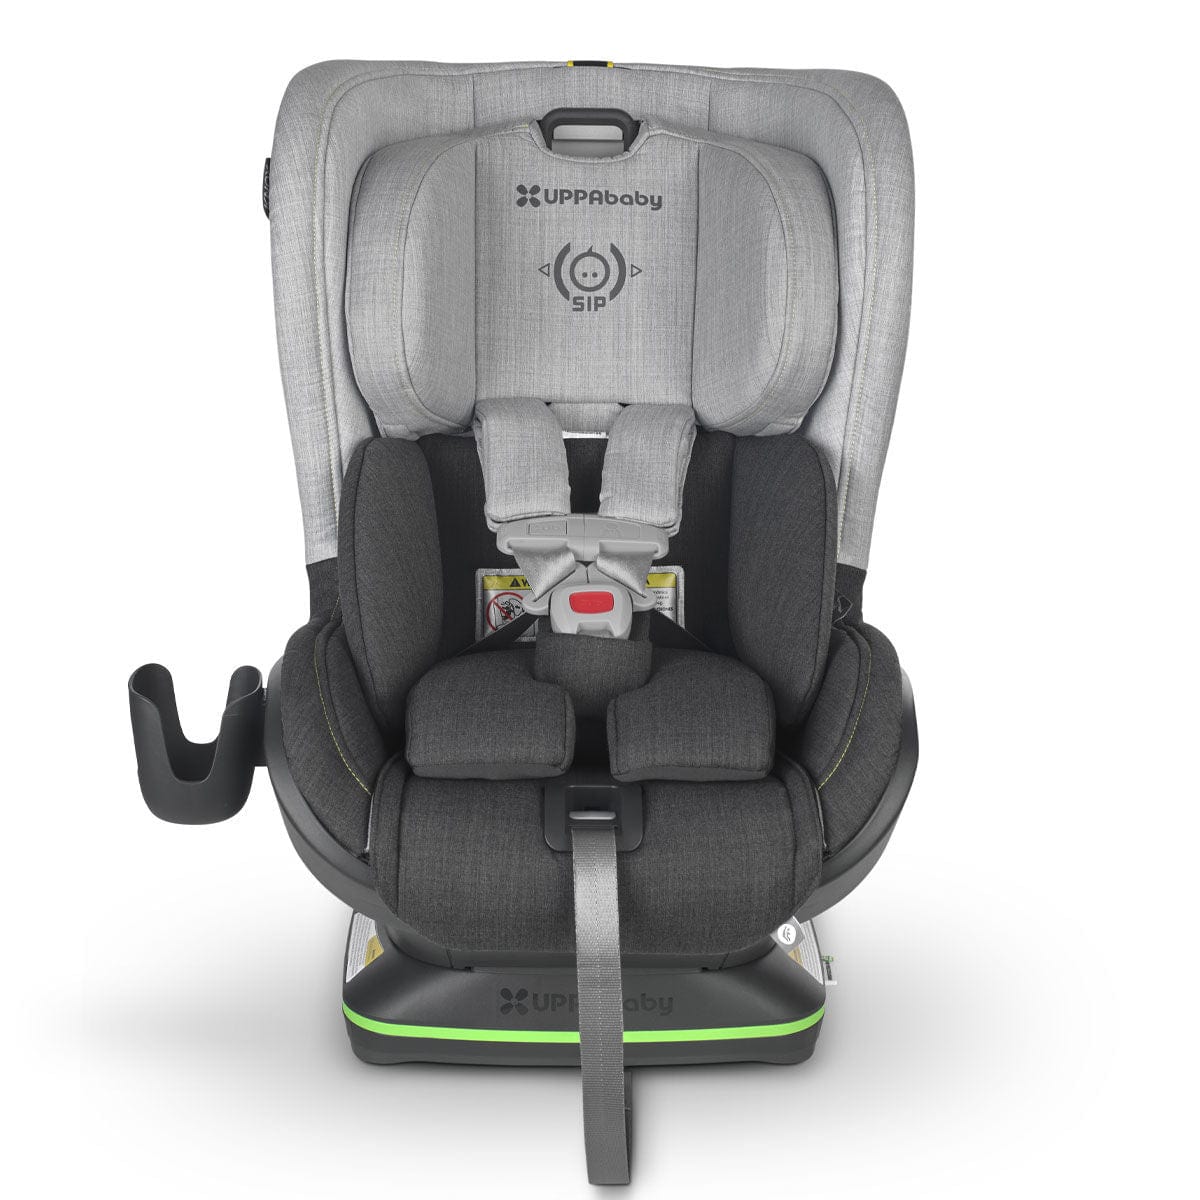 UPPAbaby convertible car seat UPPAbaby KNOX Convertible Car Seat - Jordan (Merino Wool)